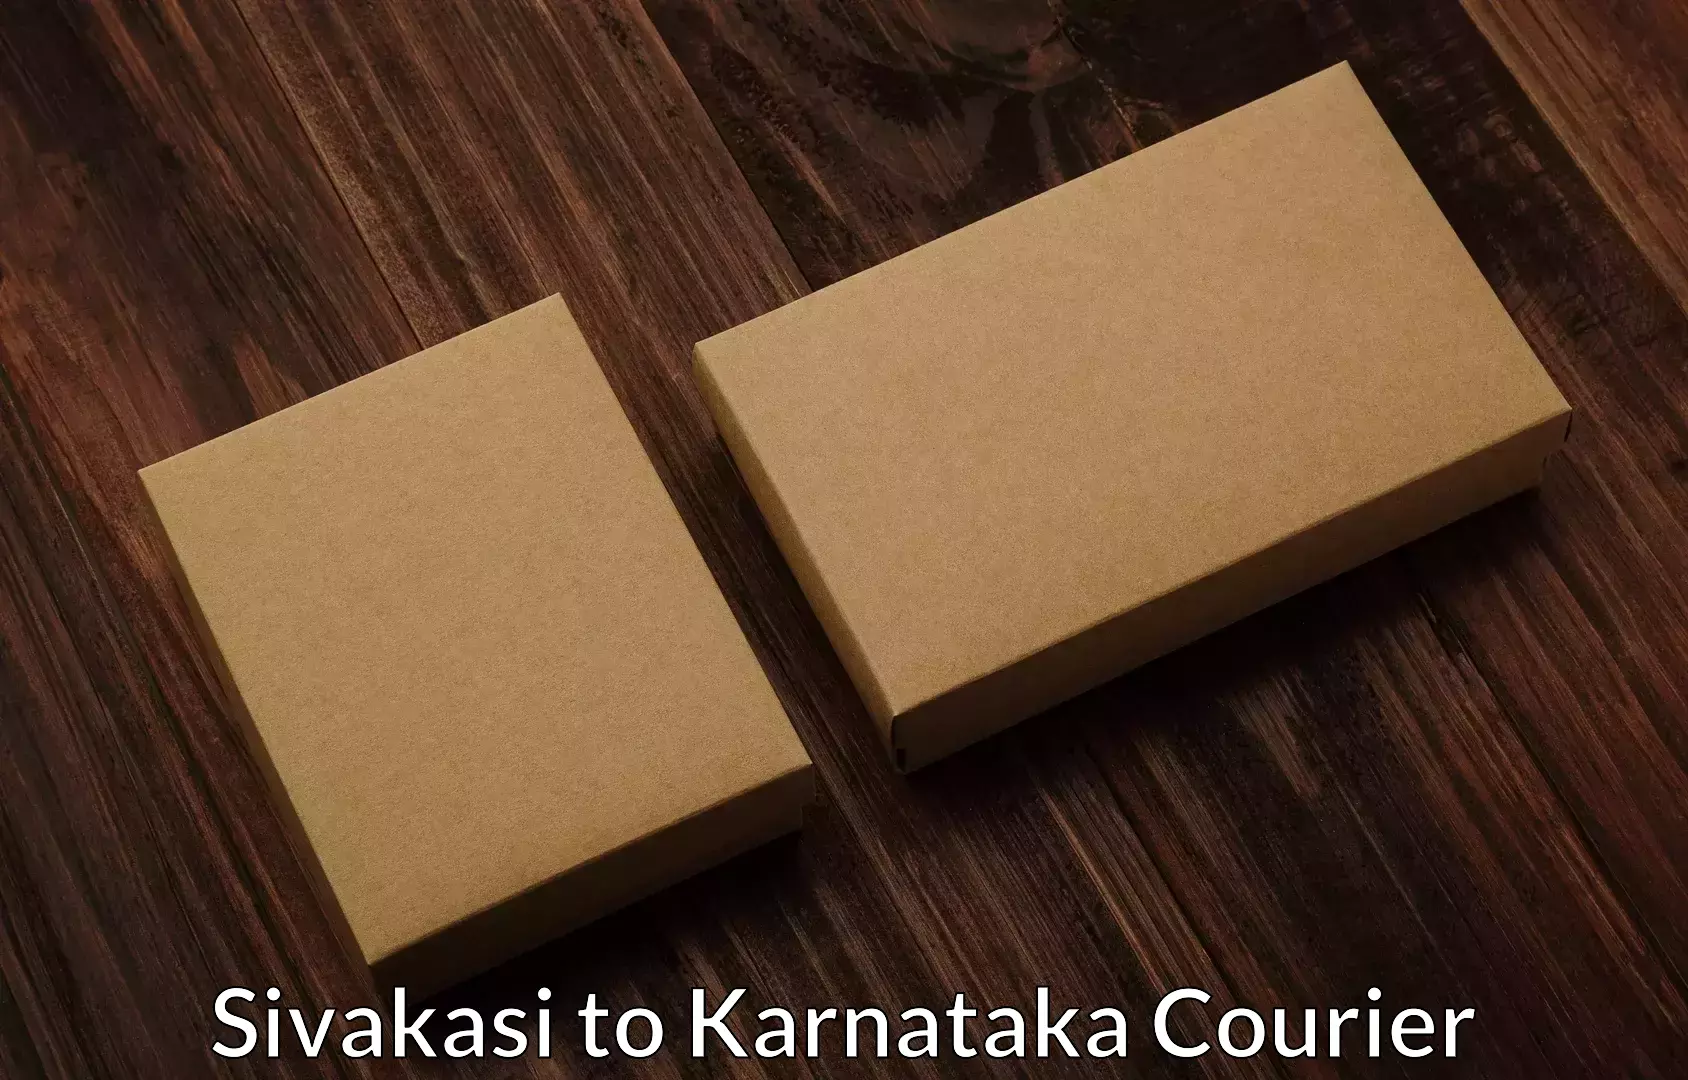 Professional packing and transport in Sivakasi to Karnataka